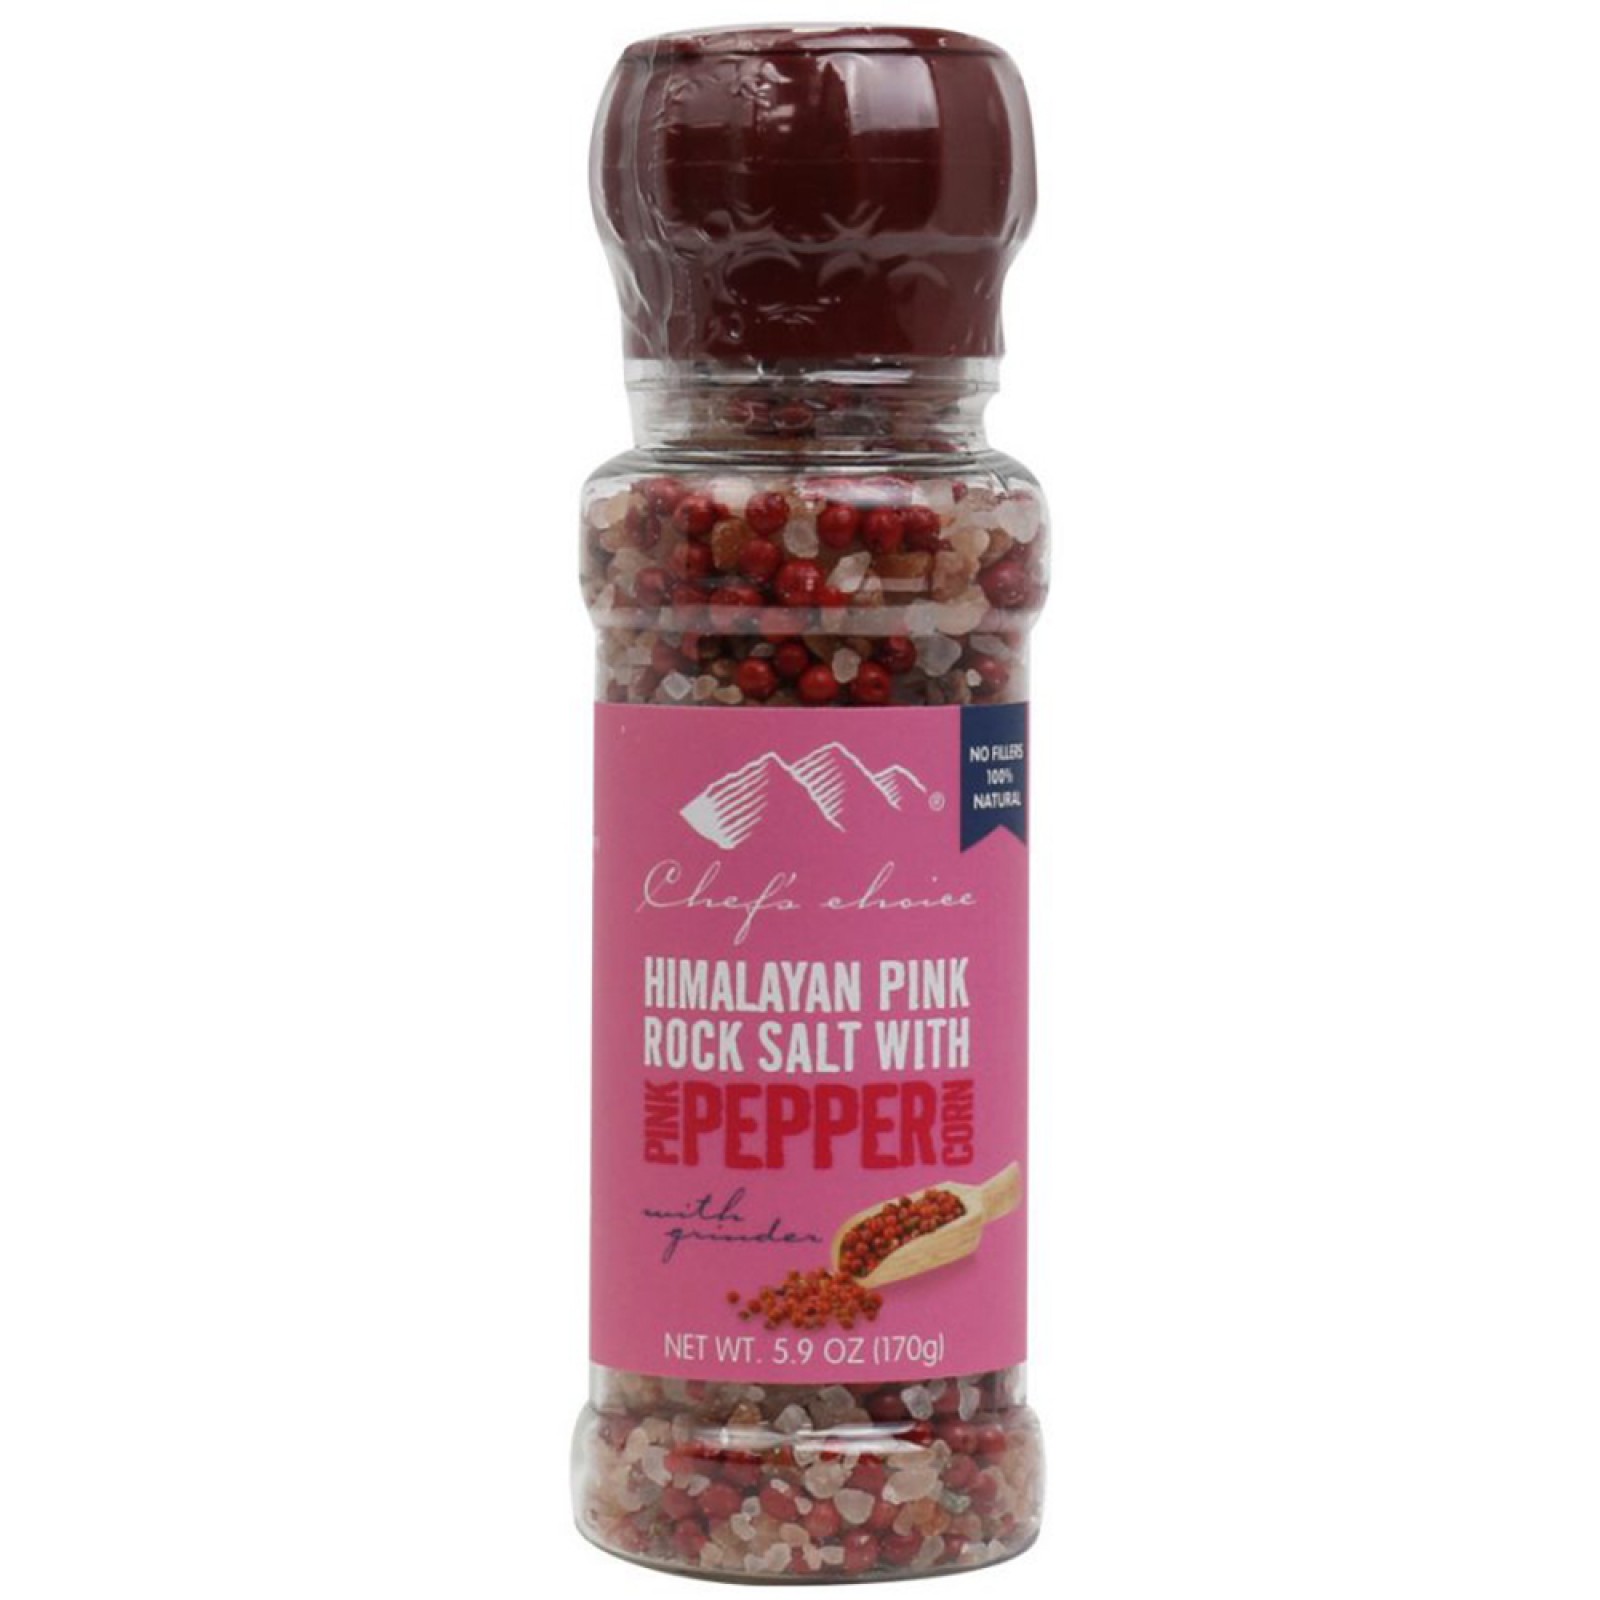 Himalayan Pink Rock Salt with Pink peppercorns